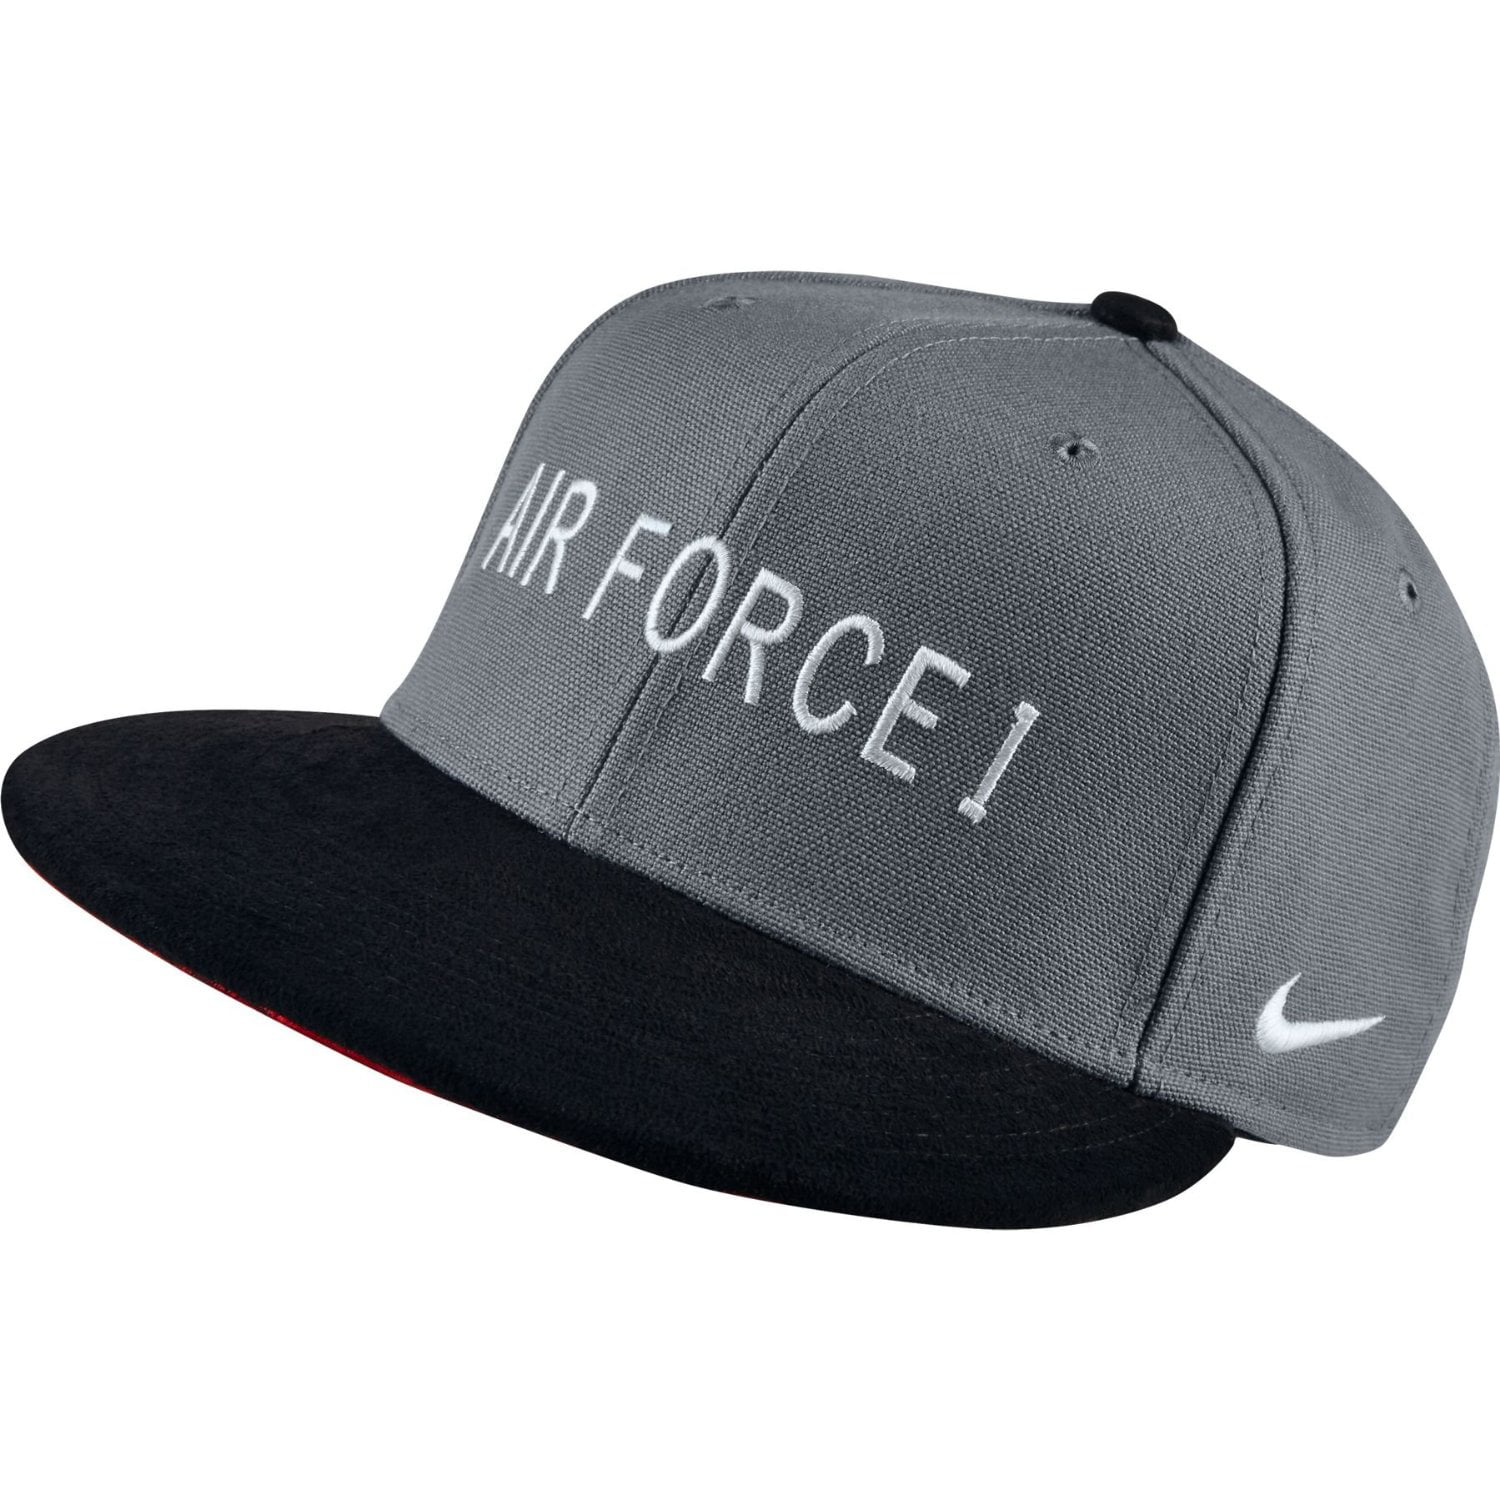 nike air force 1 cap